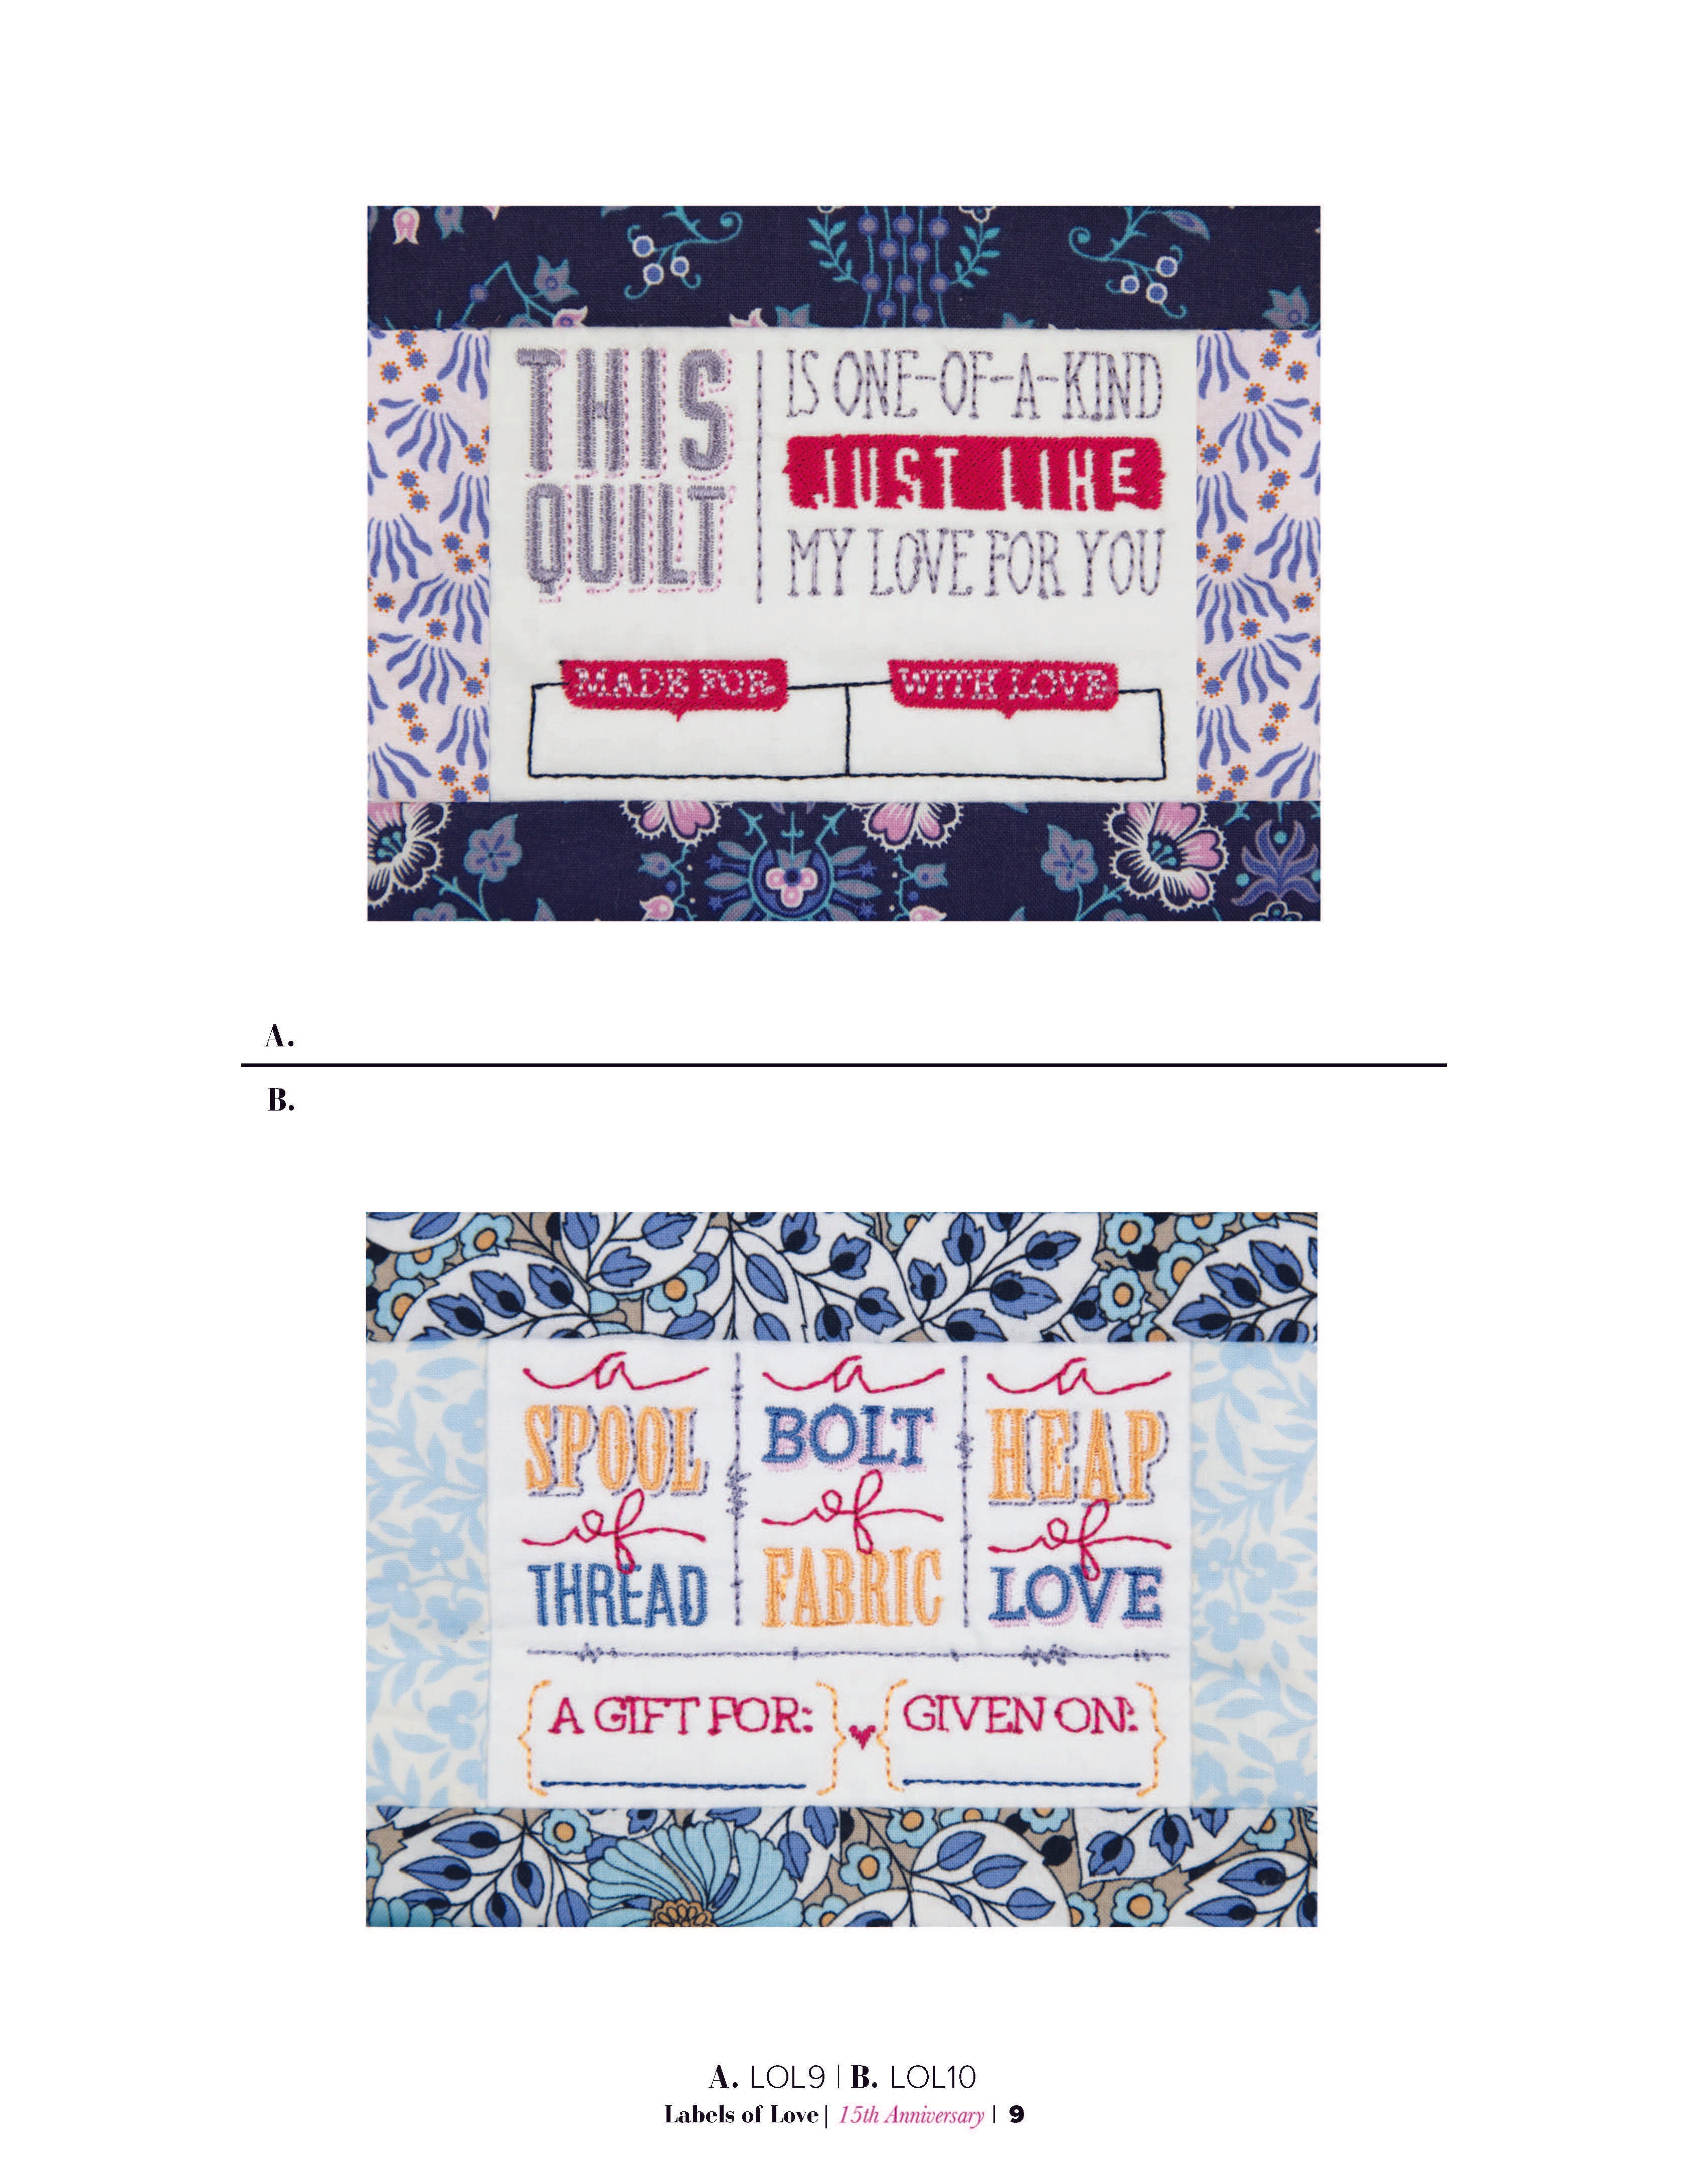 Quilt Labels — Anita Goodesign